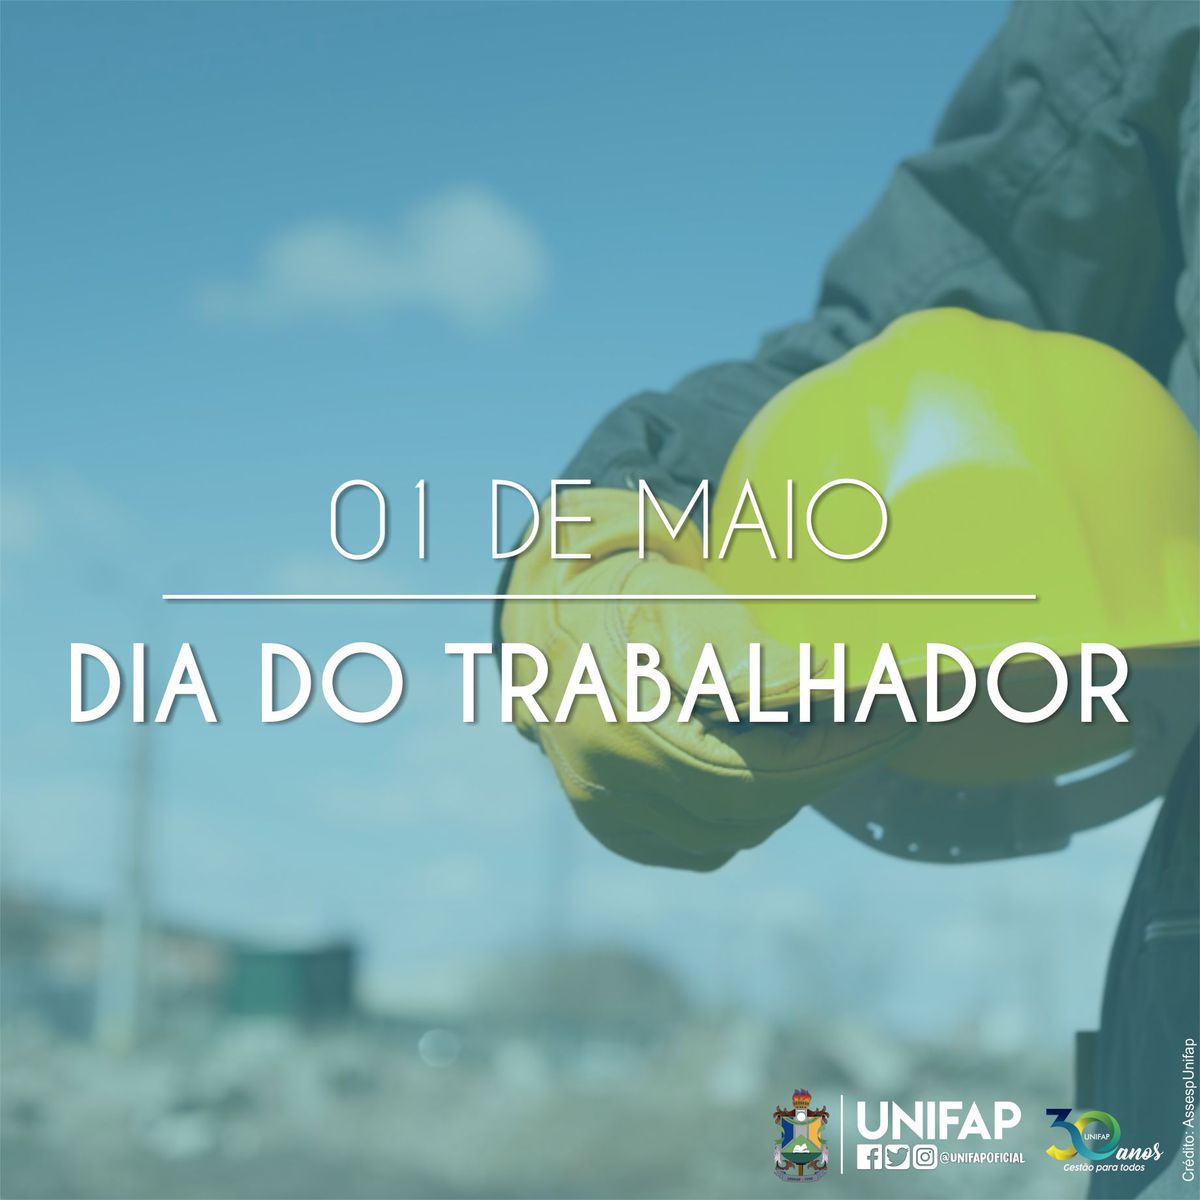 UNIFAP parabeniza todos seus colaboradores pelo Dia do Trabalhador